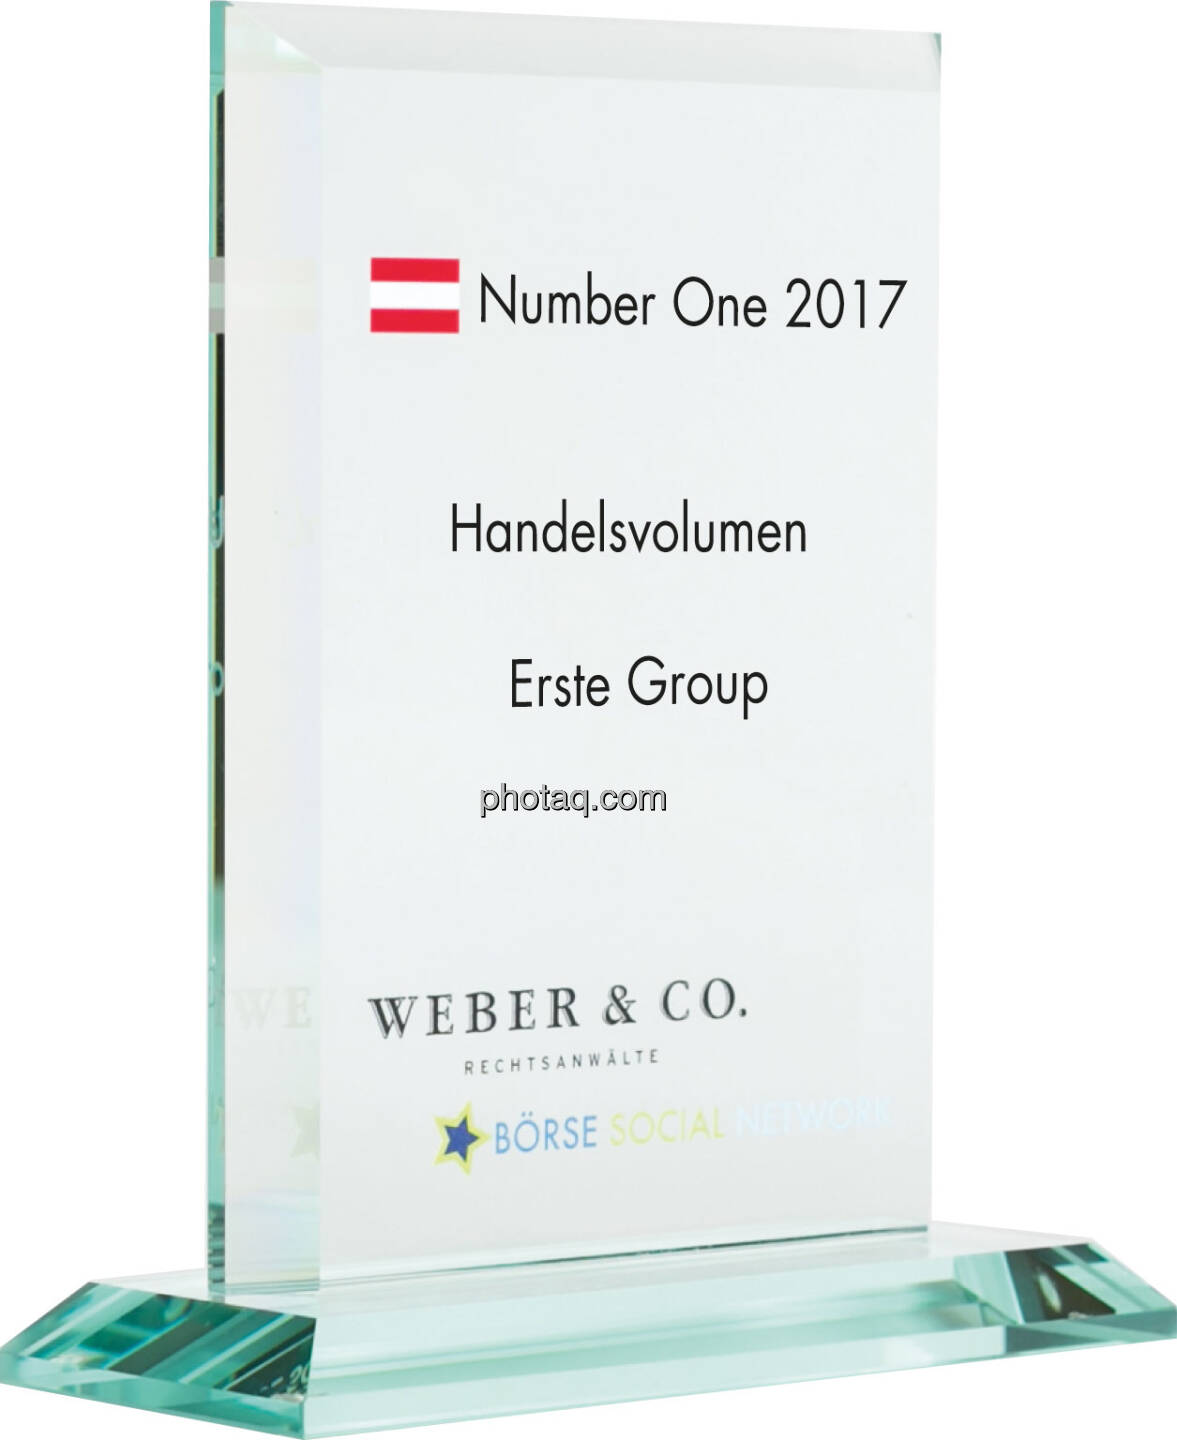 Number One Awards 2017 - Handelsvolumen - Erste Group